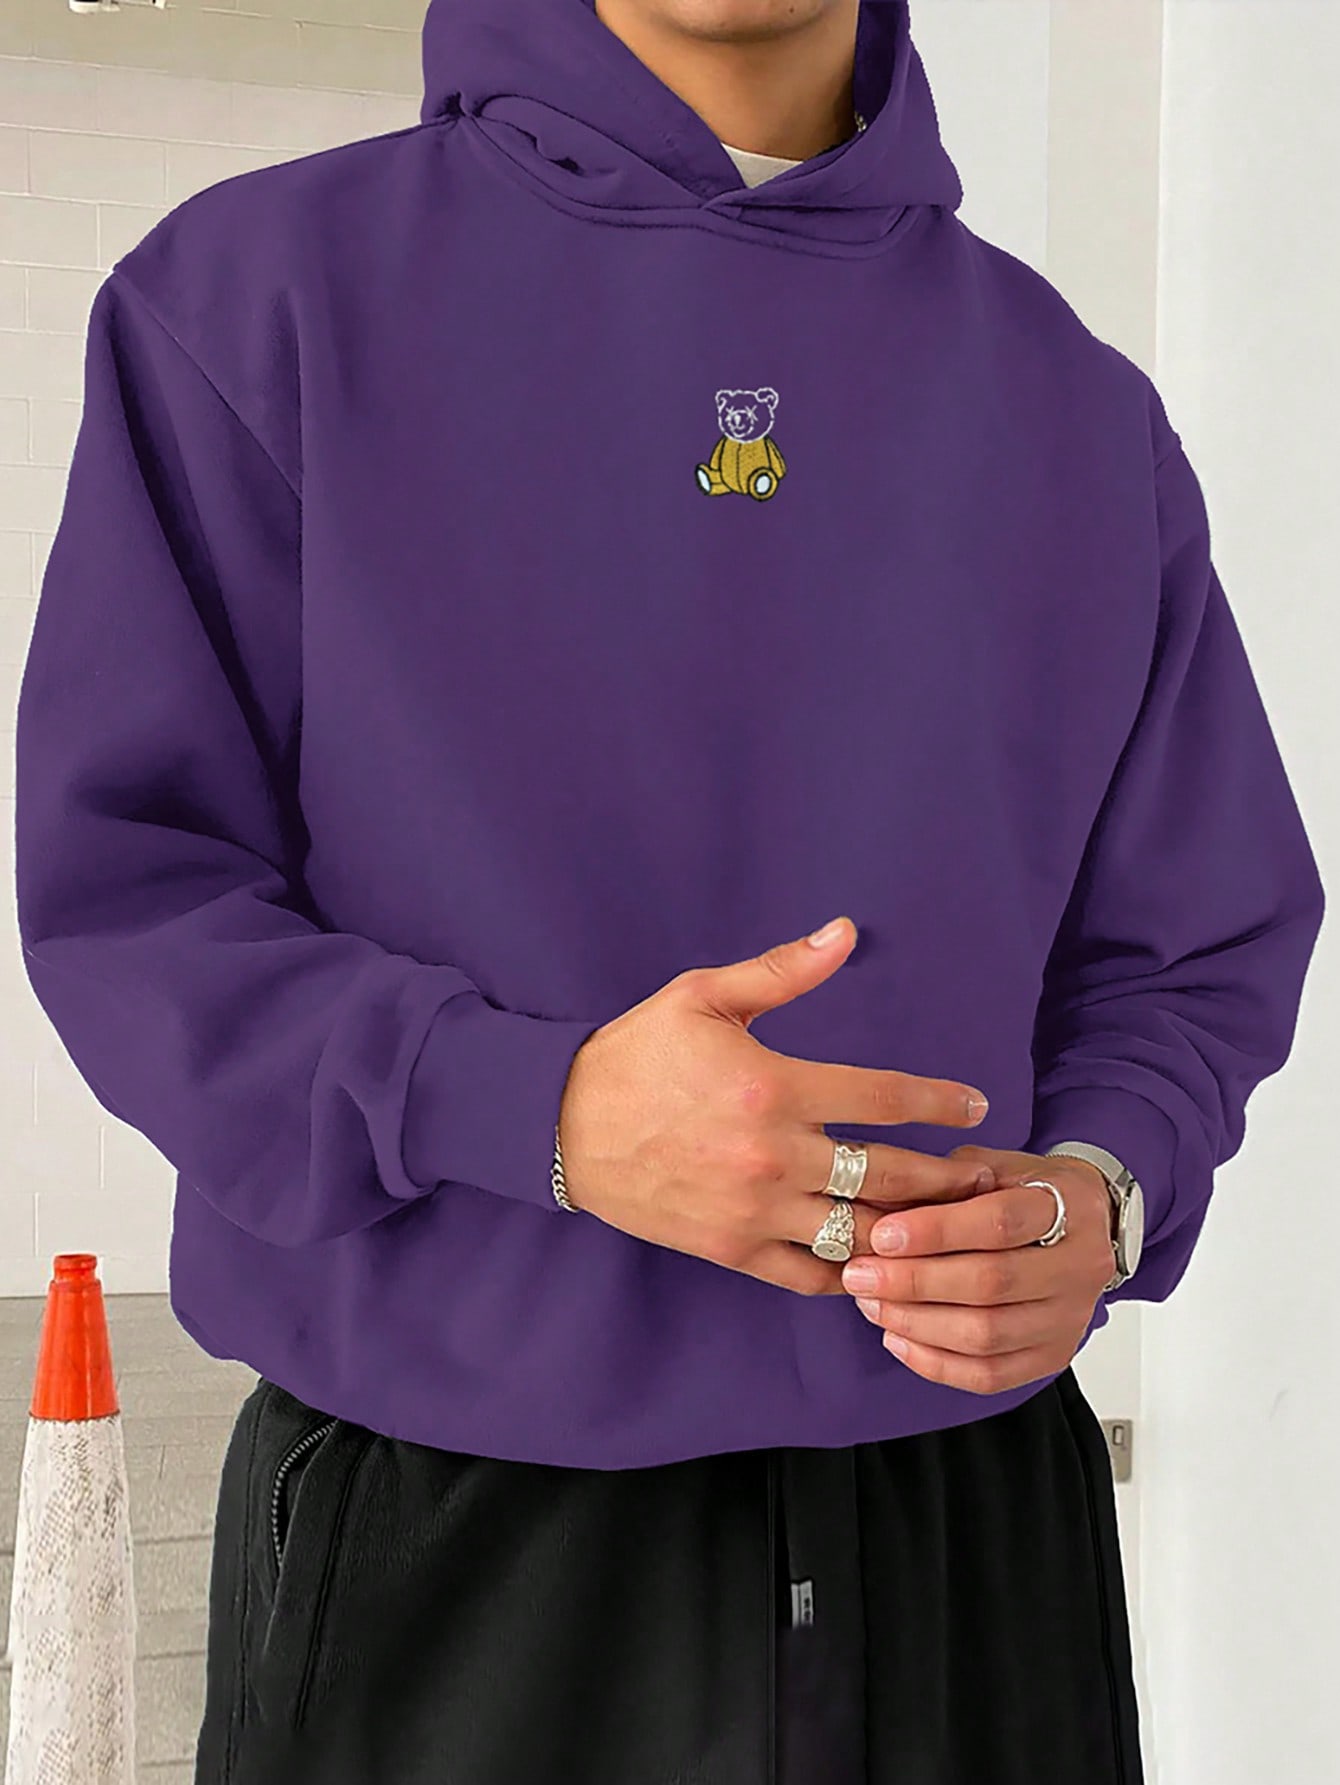 Мужская толстовка с капюшоном Manfinity Hypemode, фиолетовый мужская толстовка manfinity homme с перекрестным принтом реглан черный